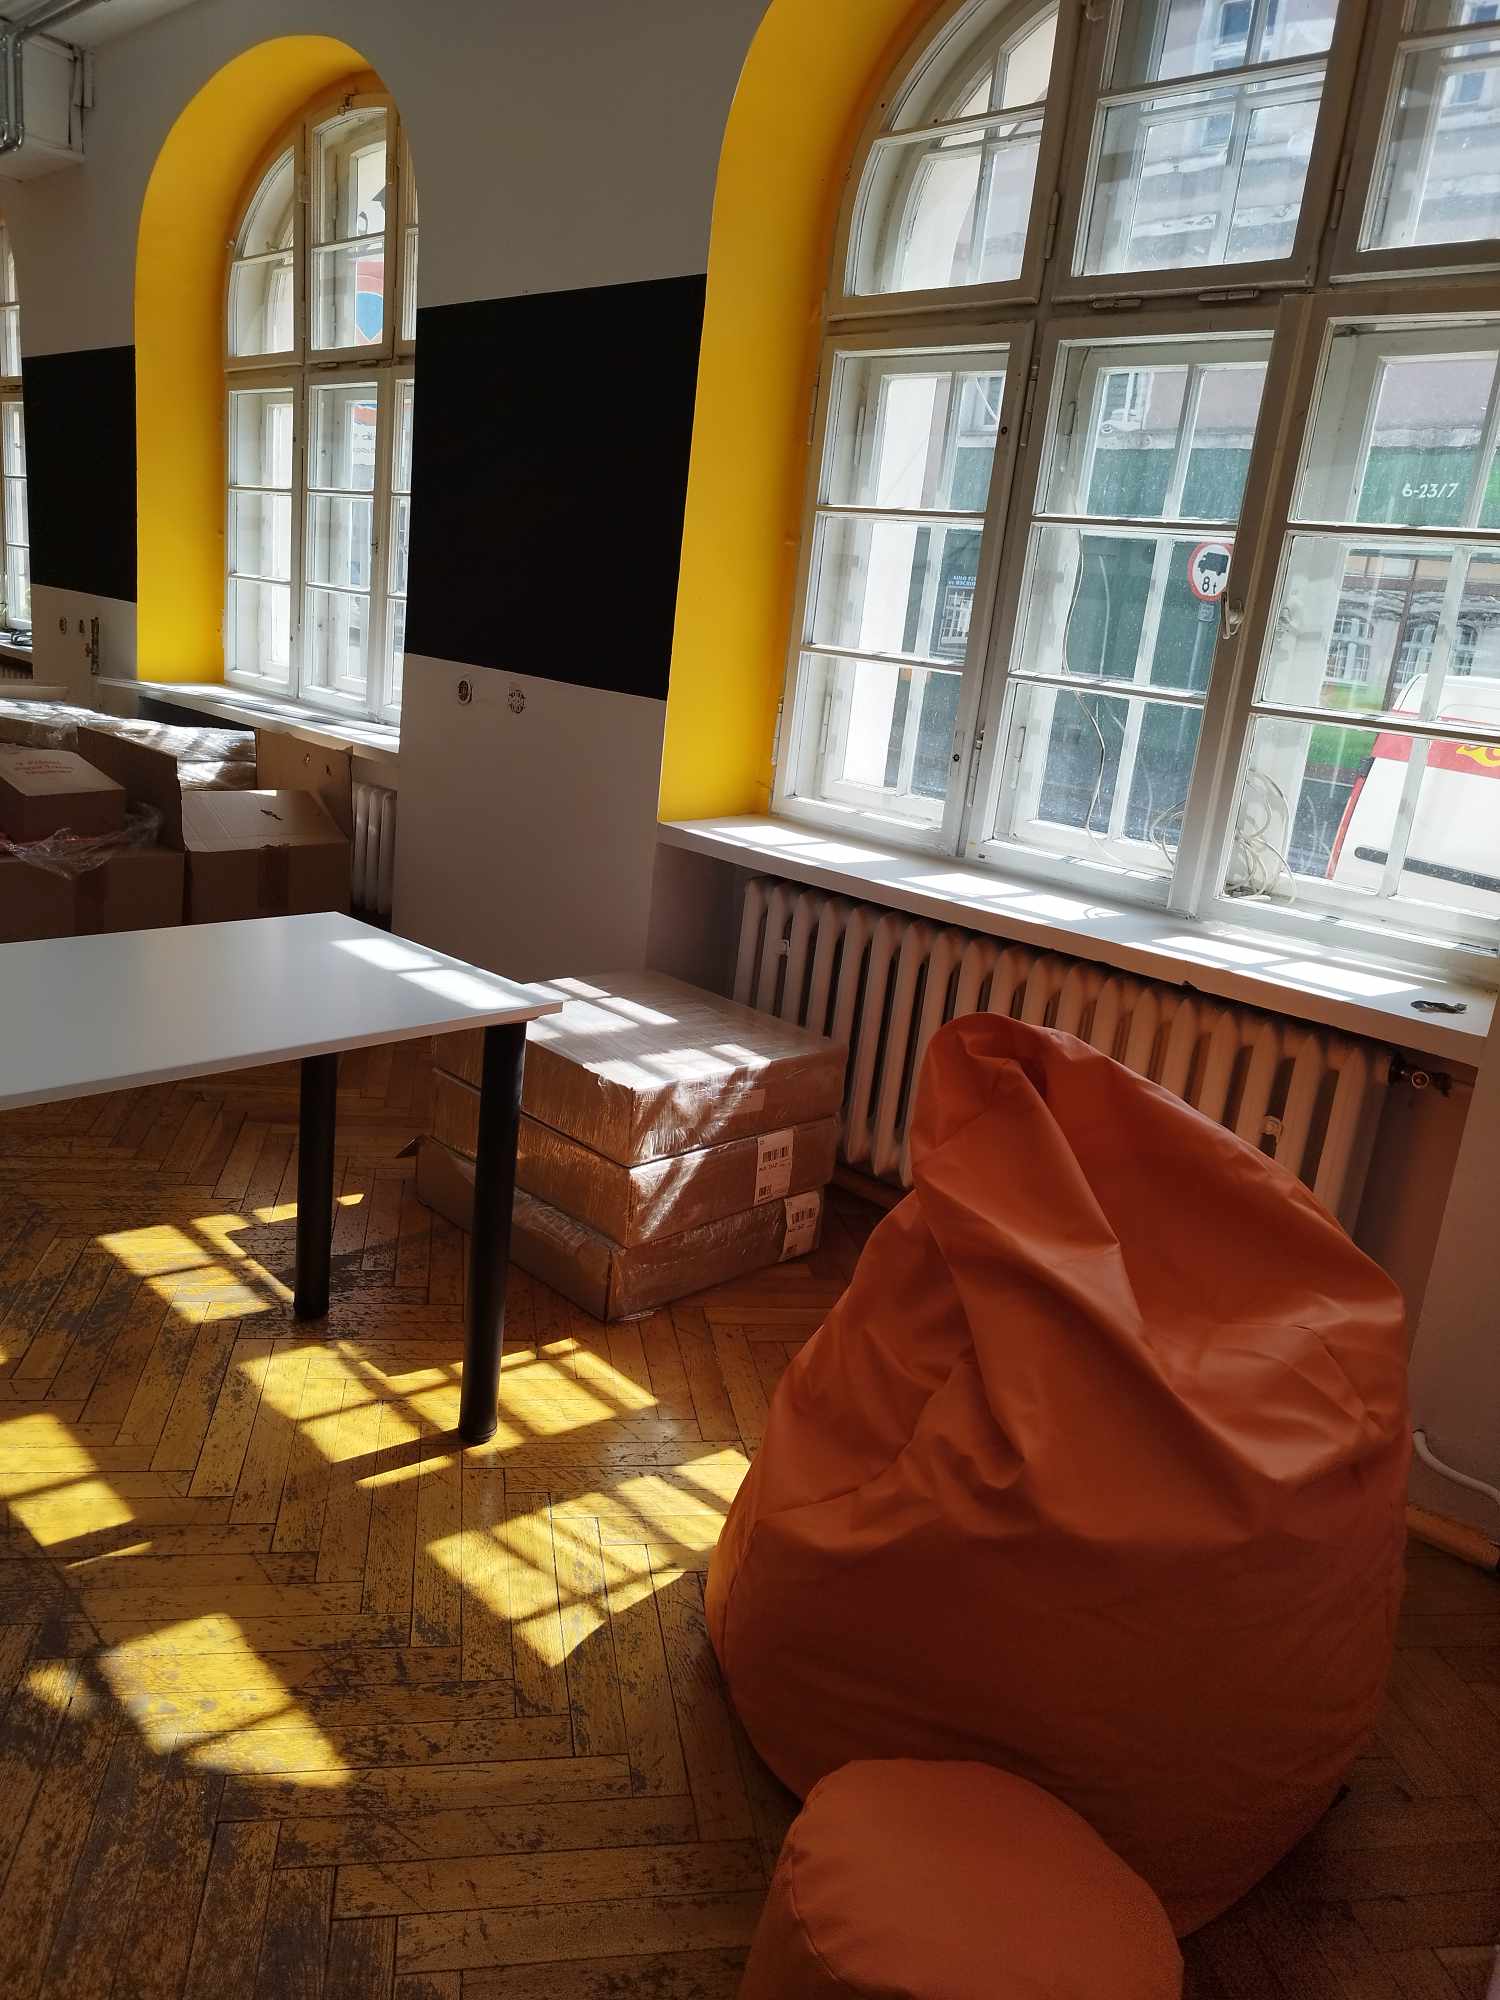 Zdjęcie przestrzeni pracowni. Widać kawałek stołu oraz pomarańczowe pufy-worki.